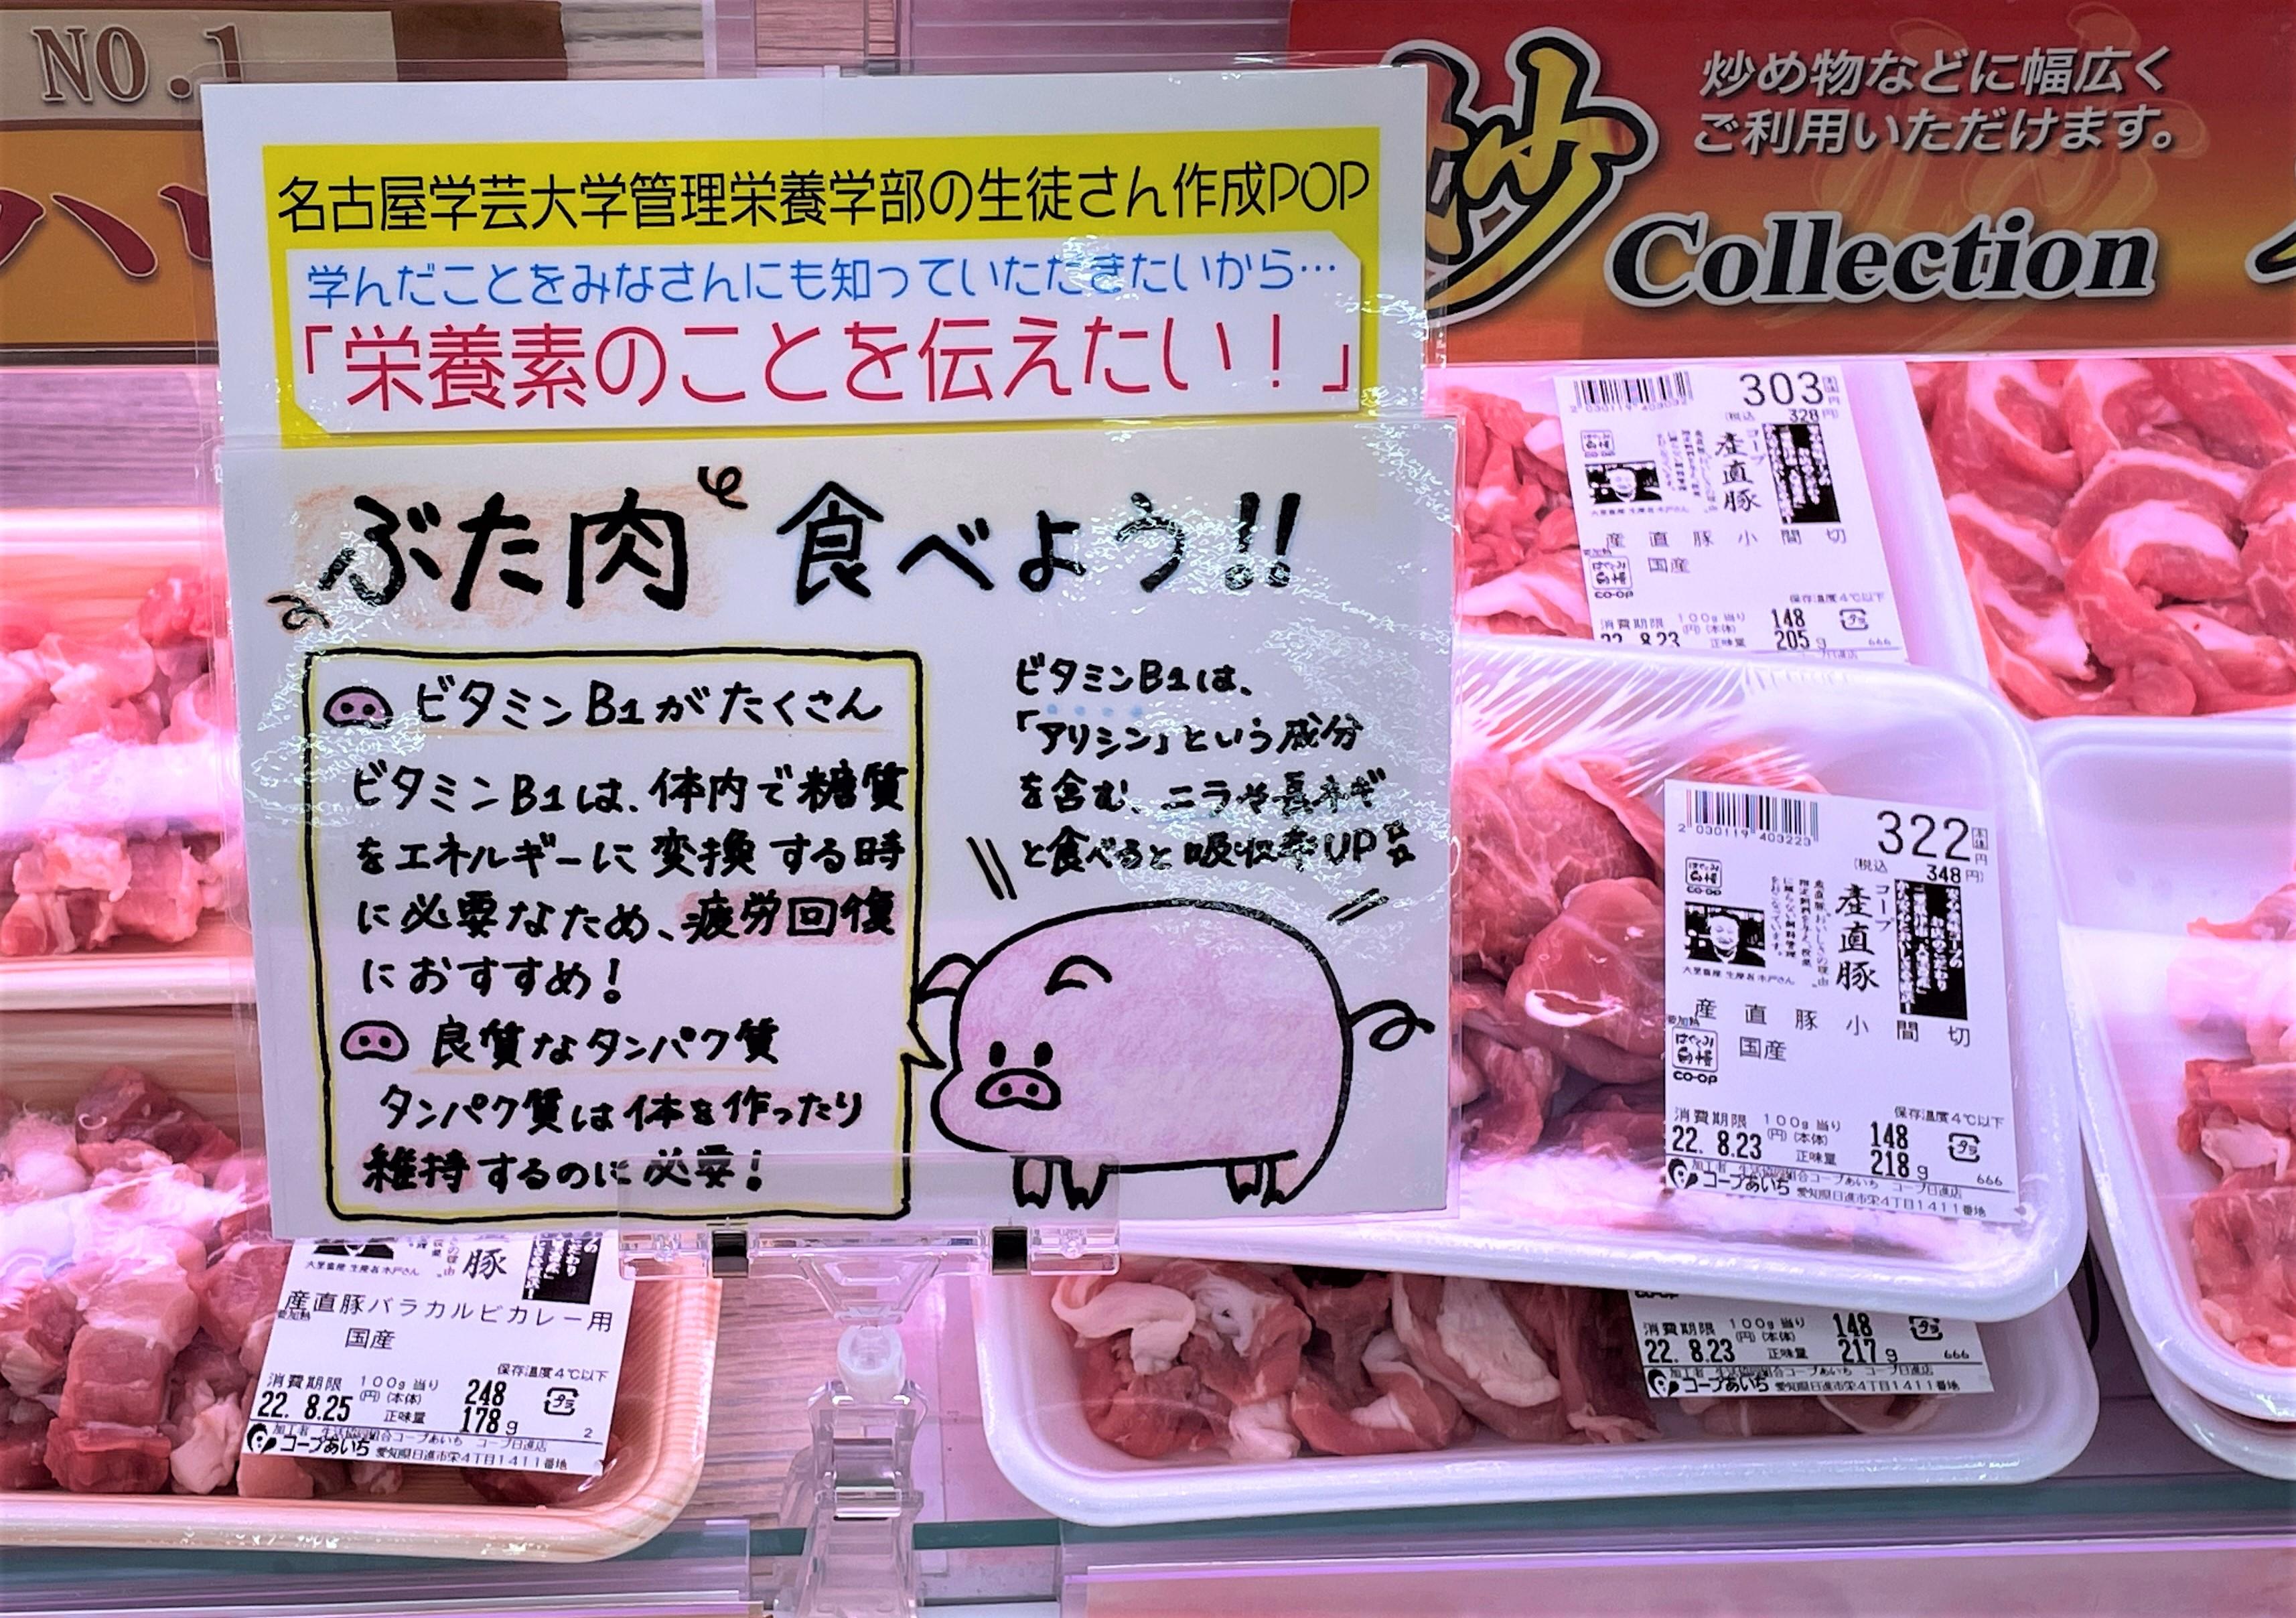 【地域での産学連携】名古屋学芸大学 管理栄養学部の学生さんが店内のPOP作成